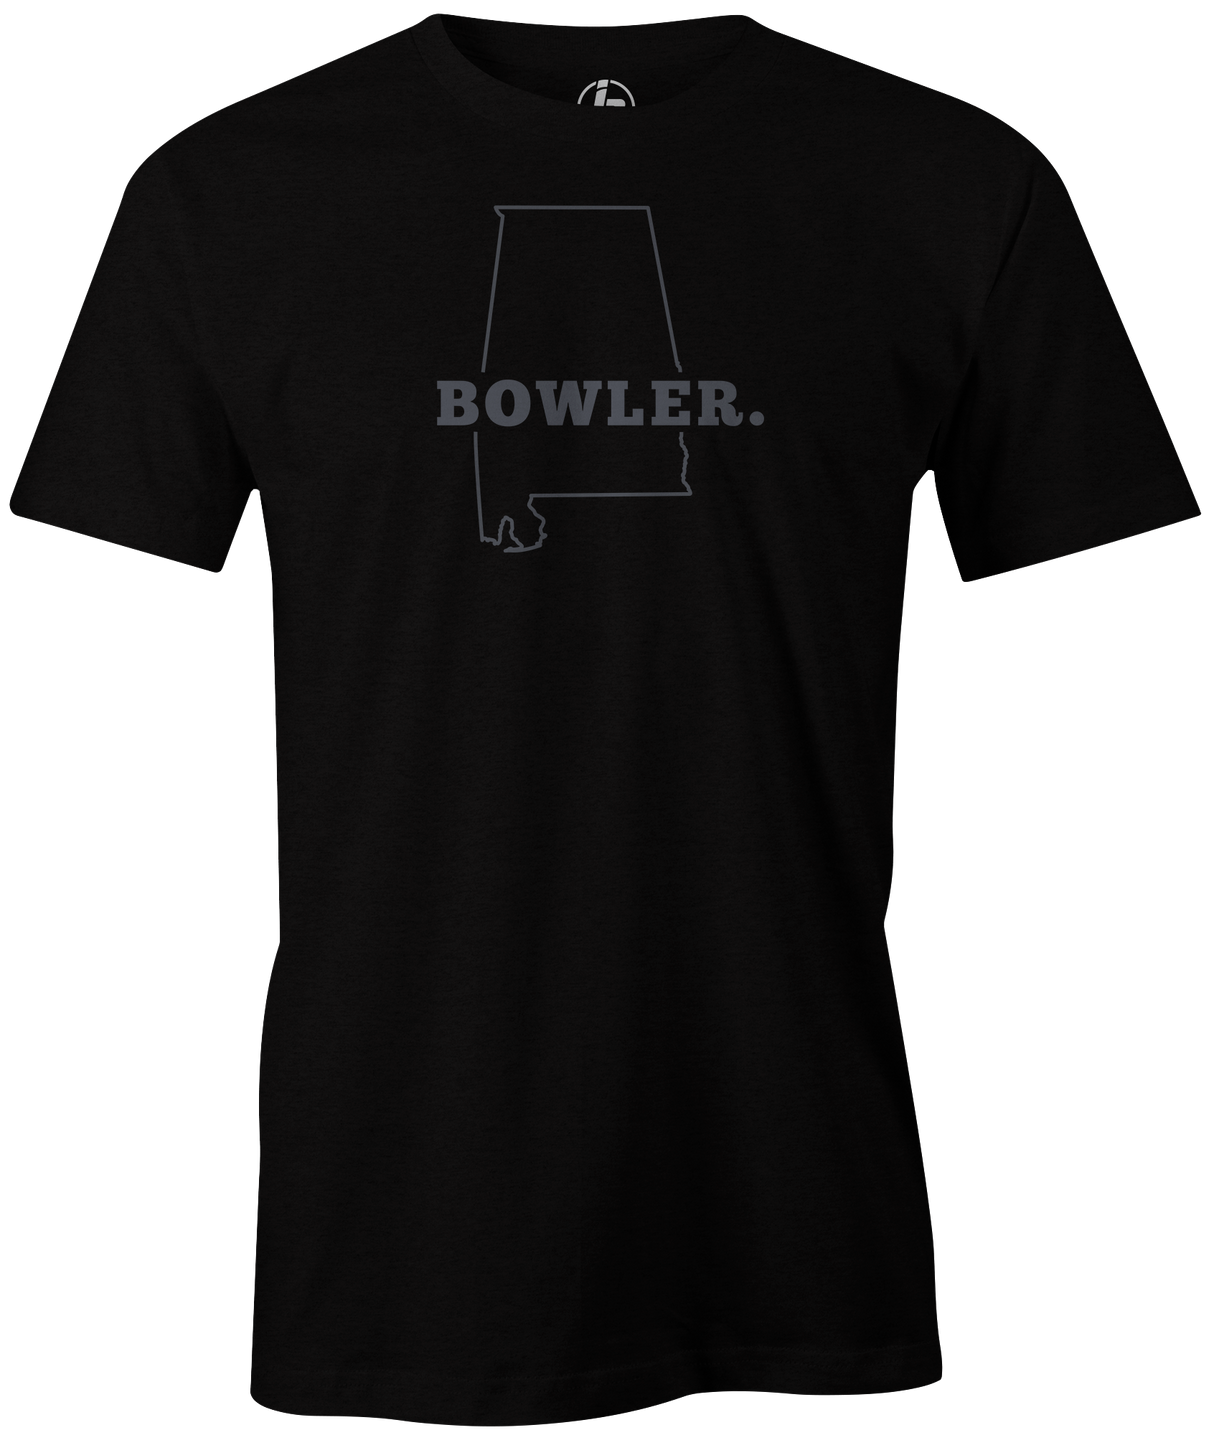 Alabama State Men's Bowling T-shirt, Black, Cool, novelty, tshirt, tee, tee-shirt, tee shirt, teeshirt, team, comfortable